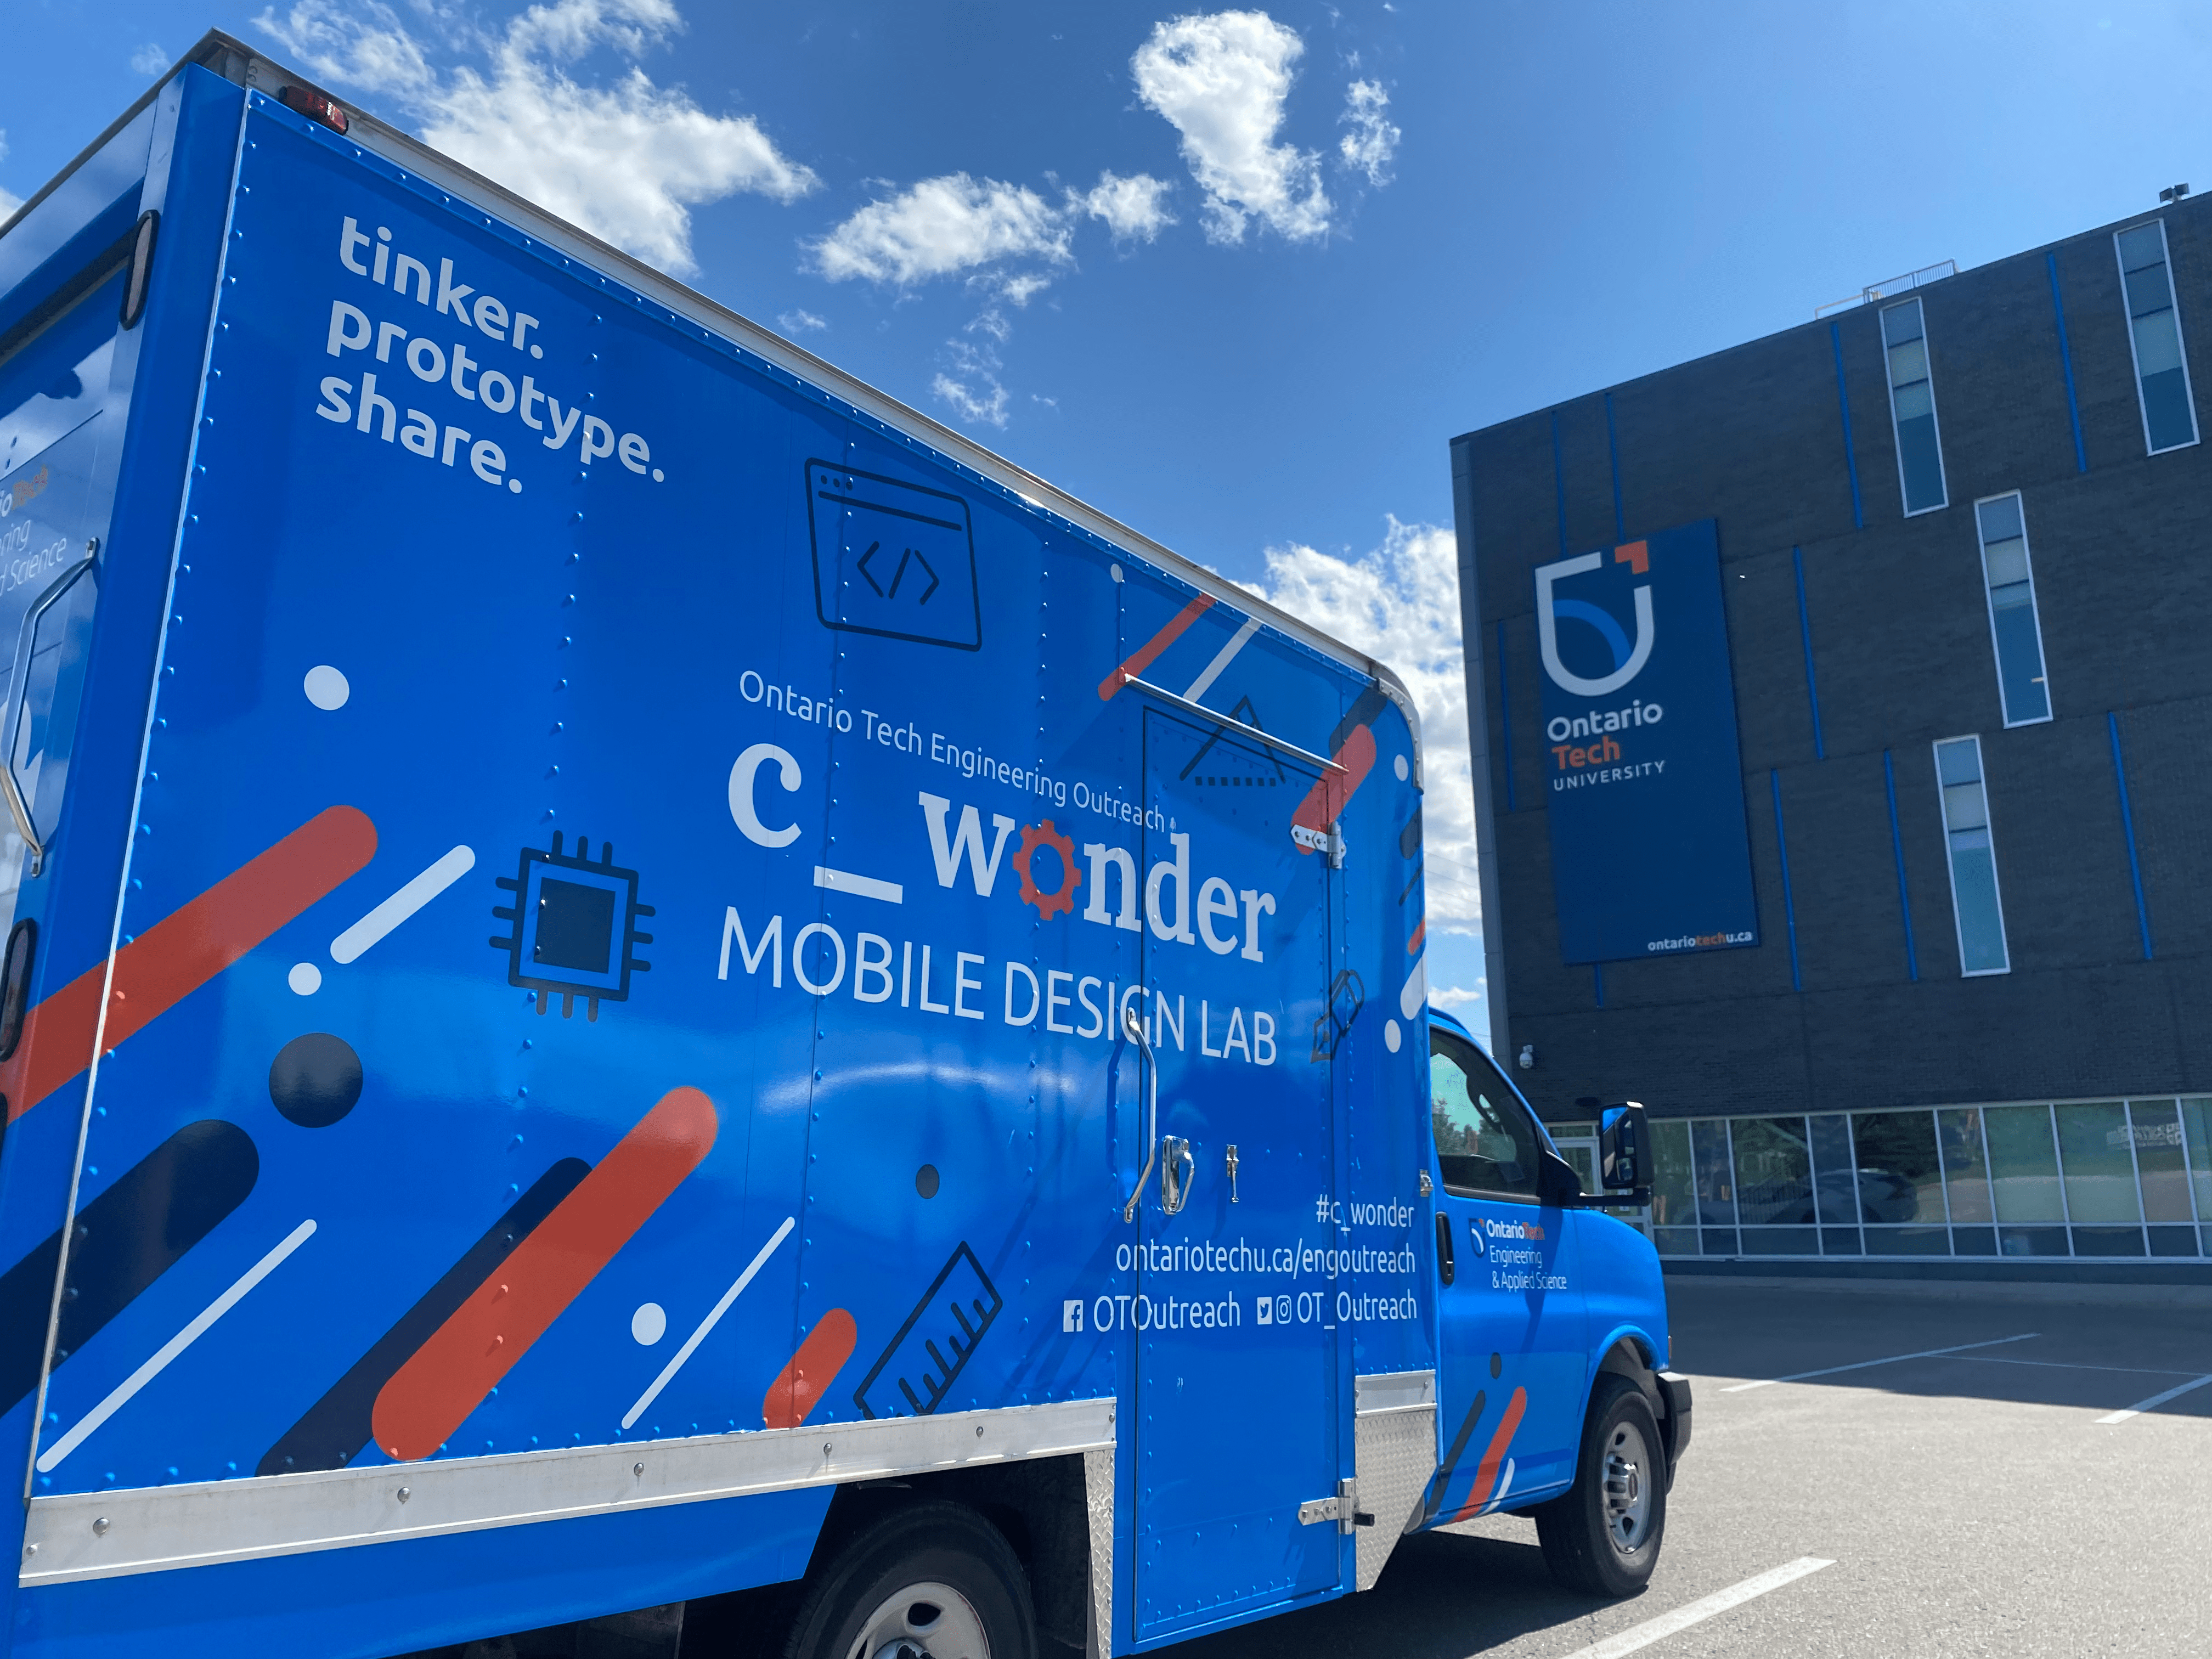 Image of C_Wonder: Mobile Design Lab truck